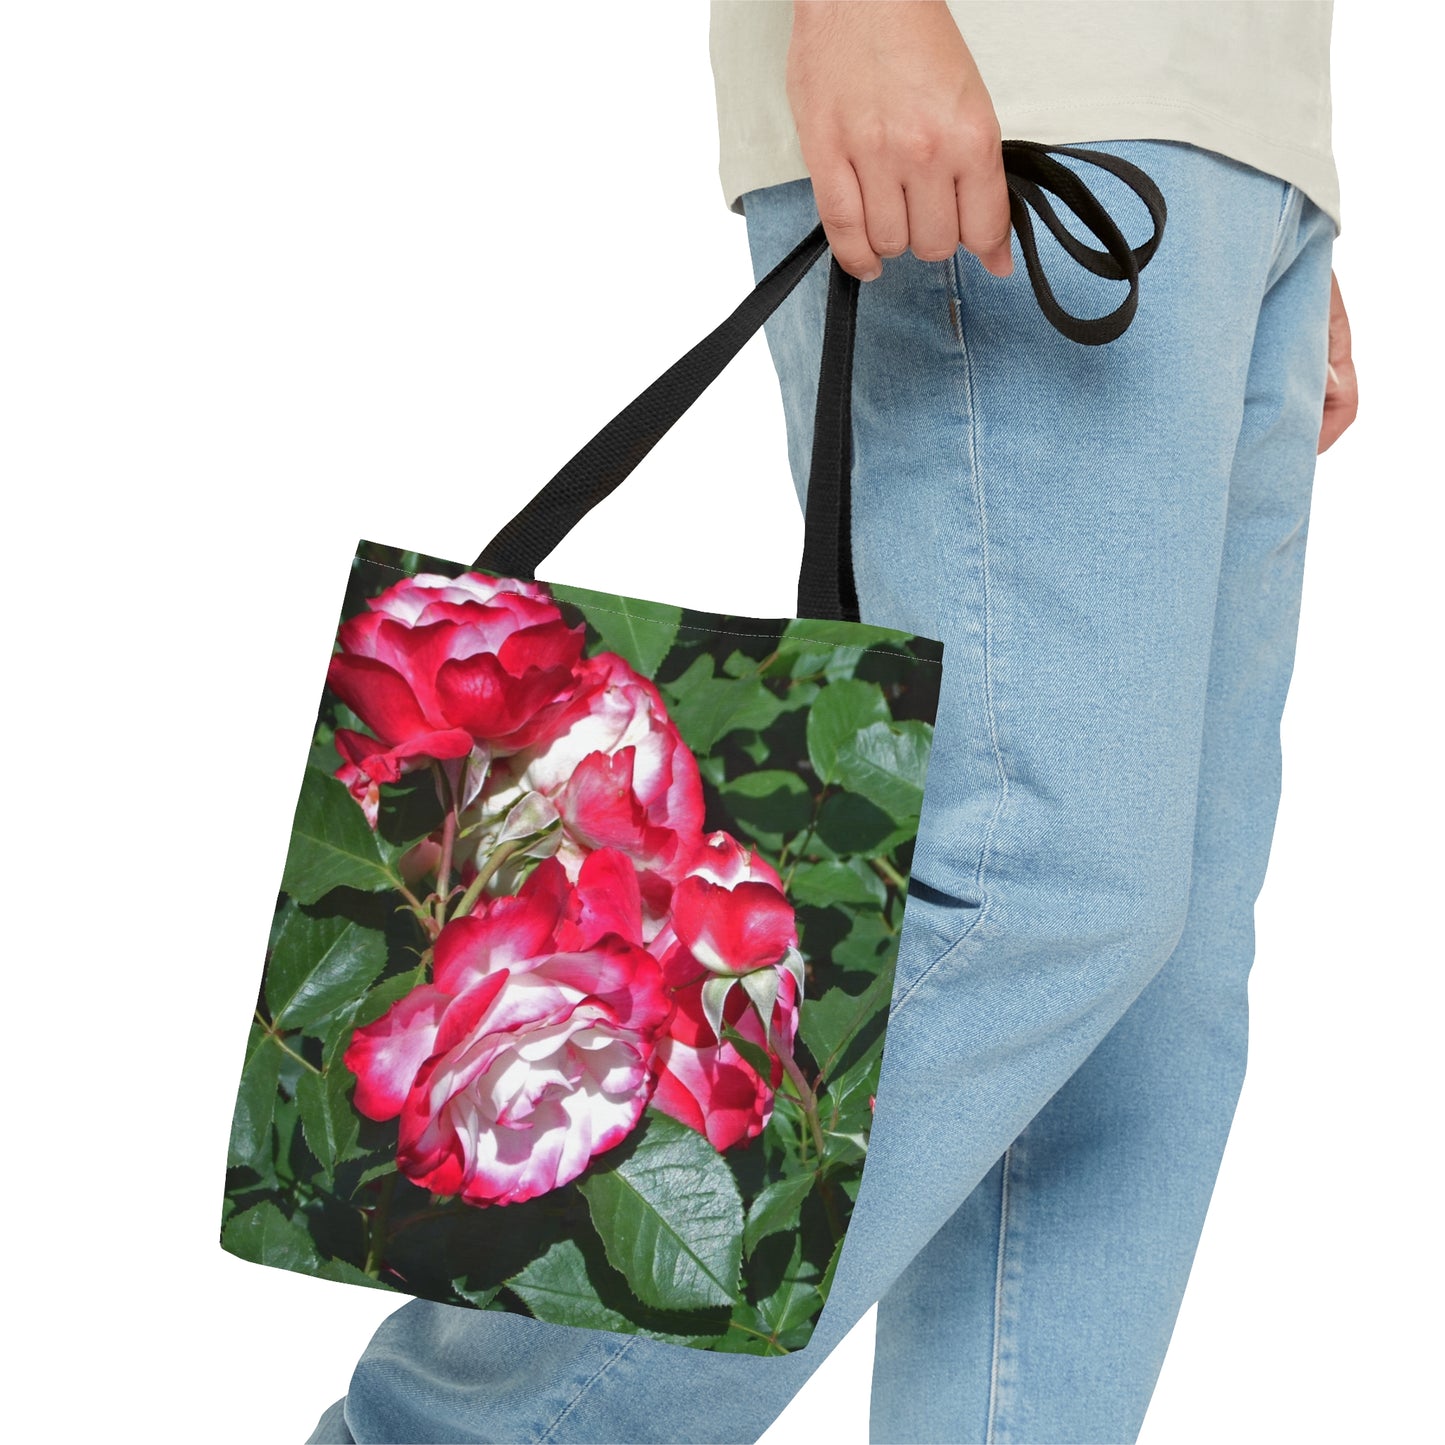 Romantic Roses Tote Bag